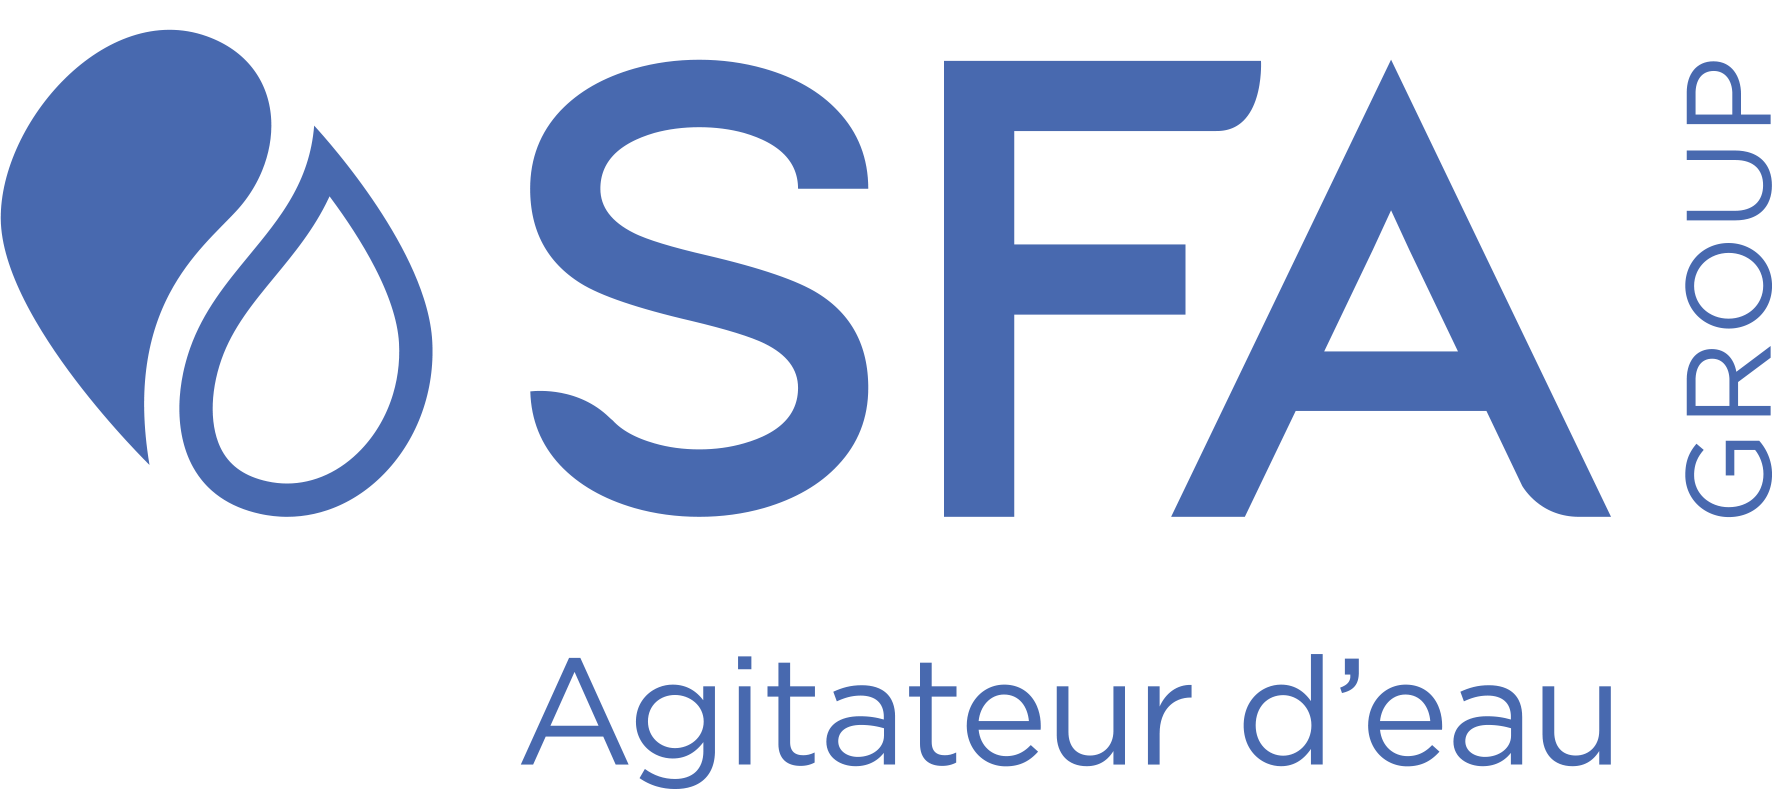 Le groupe SFA figure parmi les leader mondiaux dans l'univers des sanitaires.